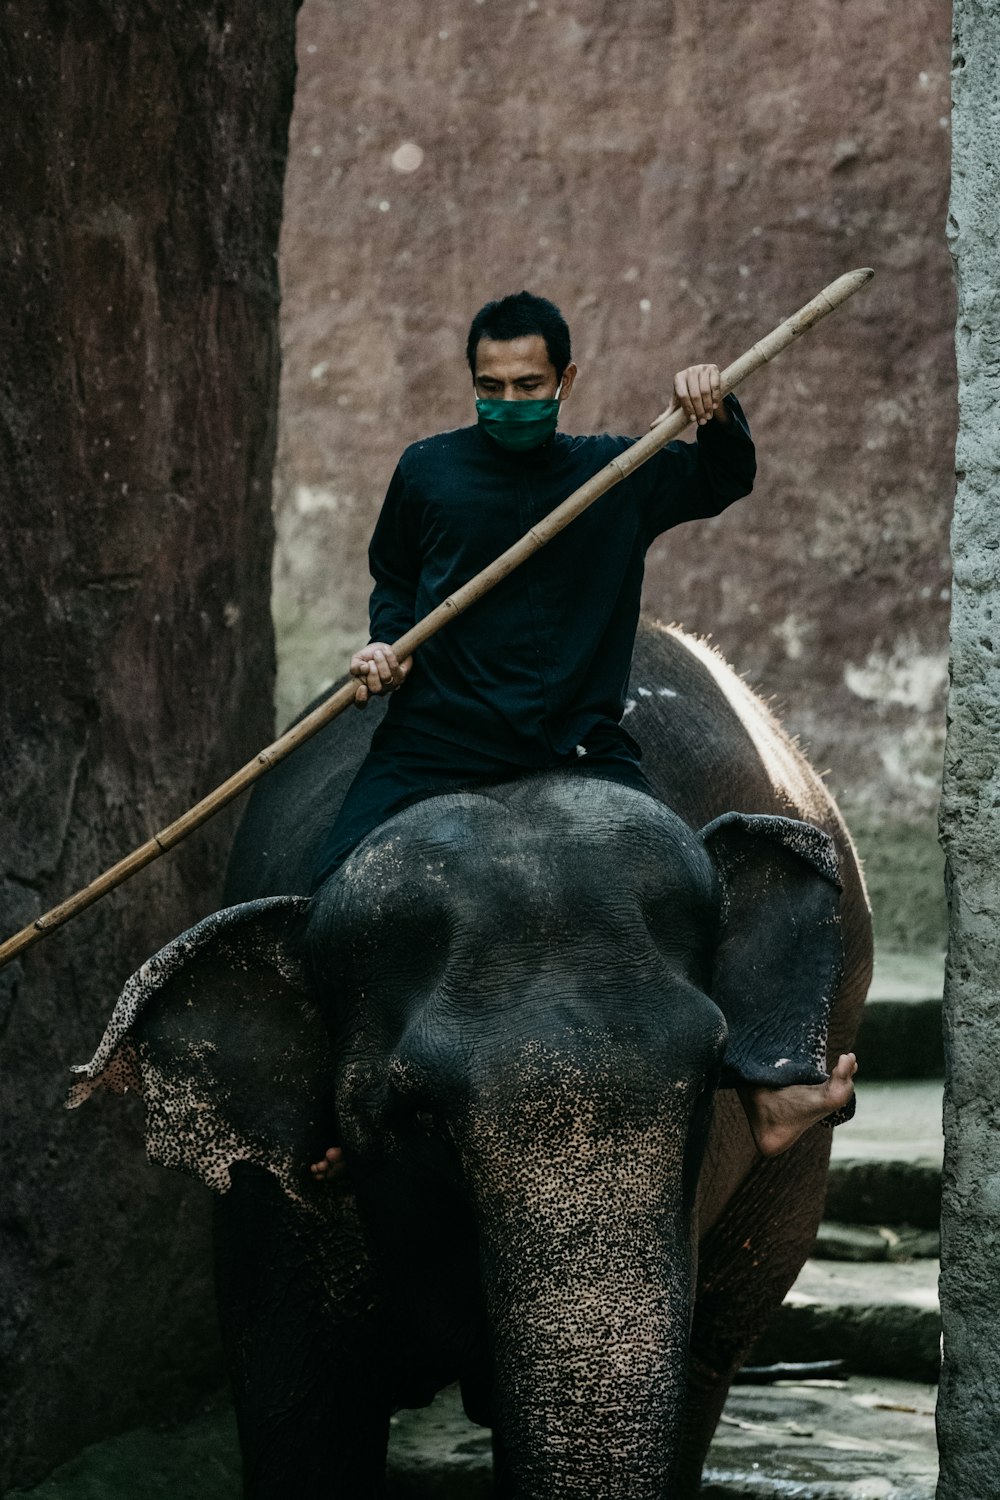 Mann im schwarzen Hemd reitet tagsüber auf einem schwarzen Elefanten